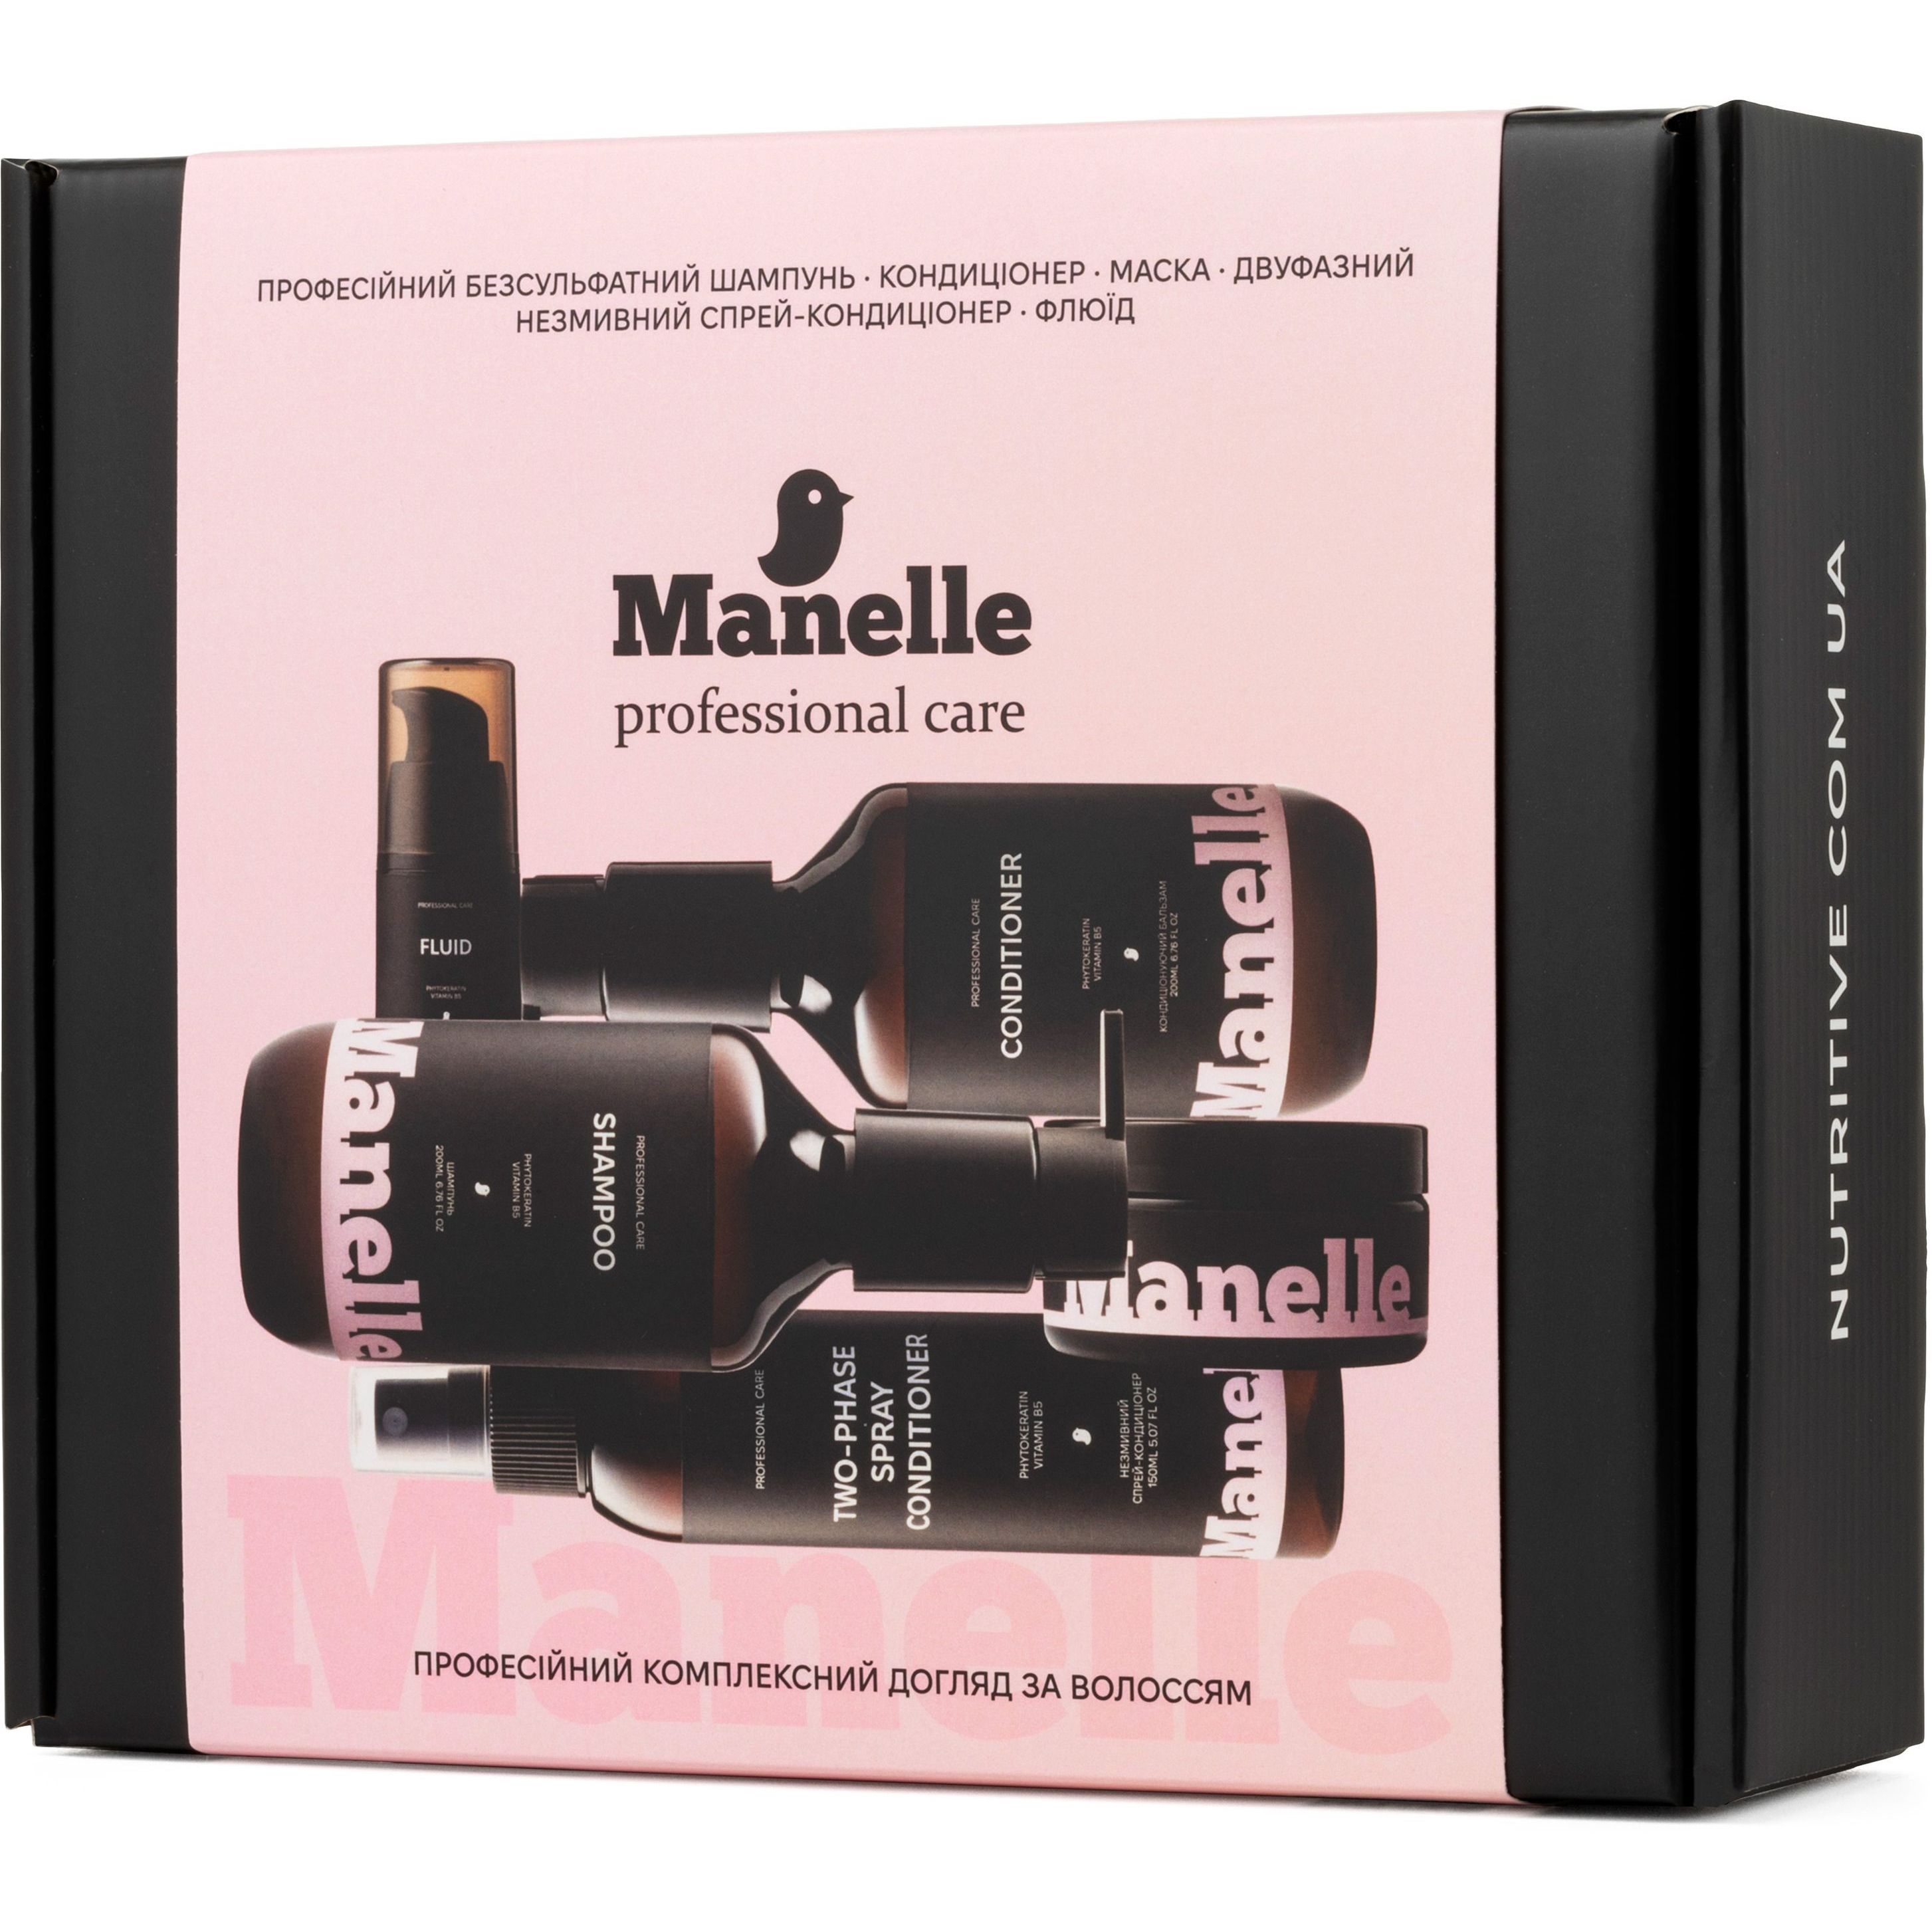 Комплексный набор для волос Manelle Professional care Phytokeratin vitamin B5 - фото 4